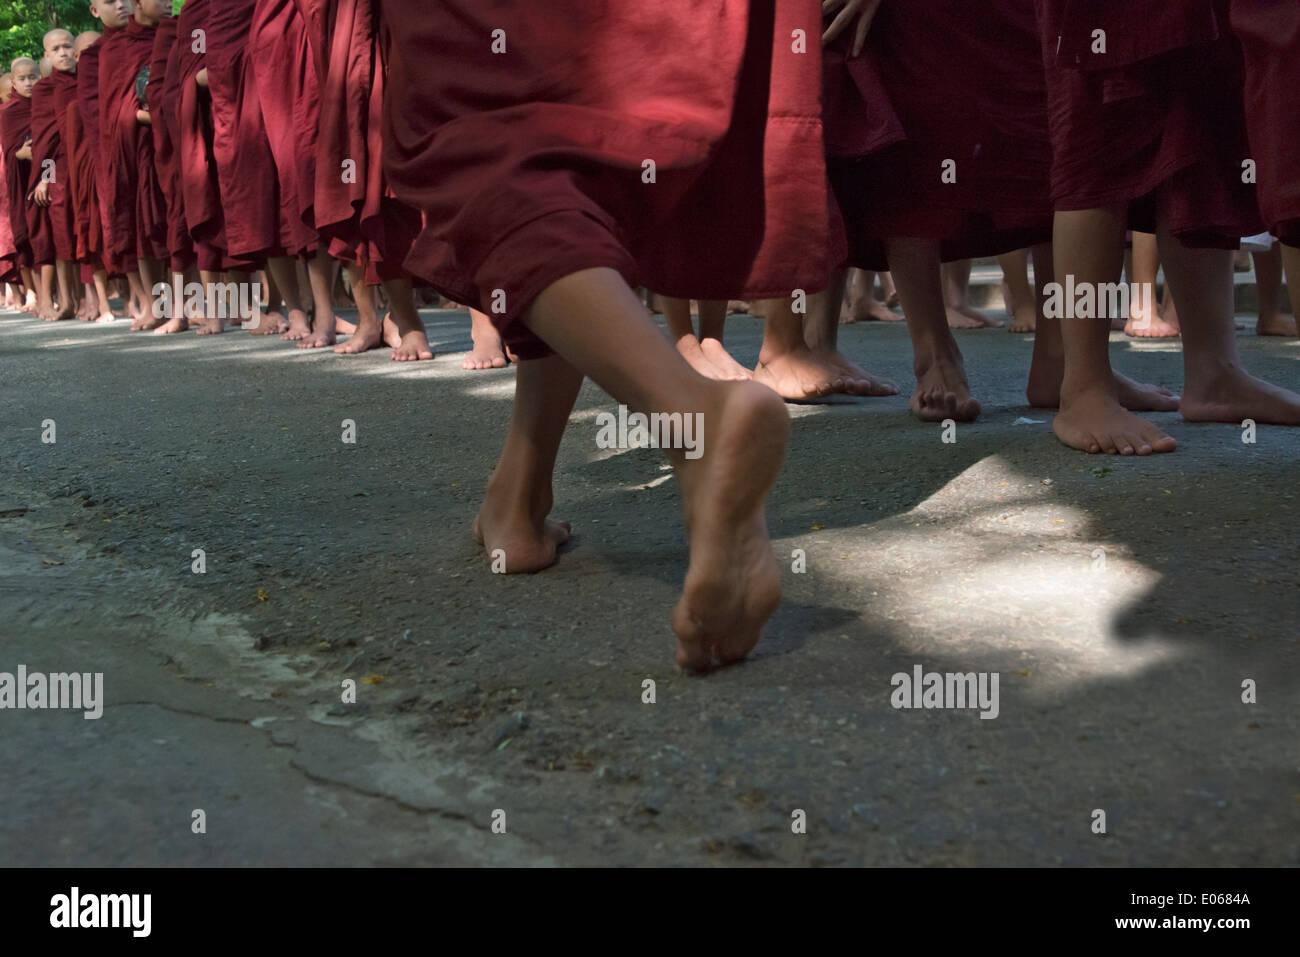 Mönche, die Schlange für die Morgenmahlzeit, Mahagandayon Kloster, Mandalay, Myanmar Stockfoto